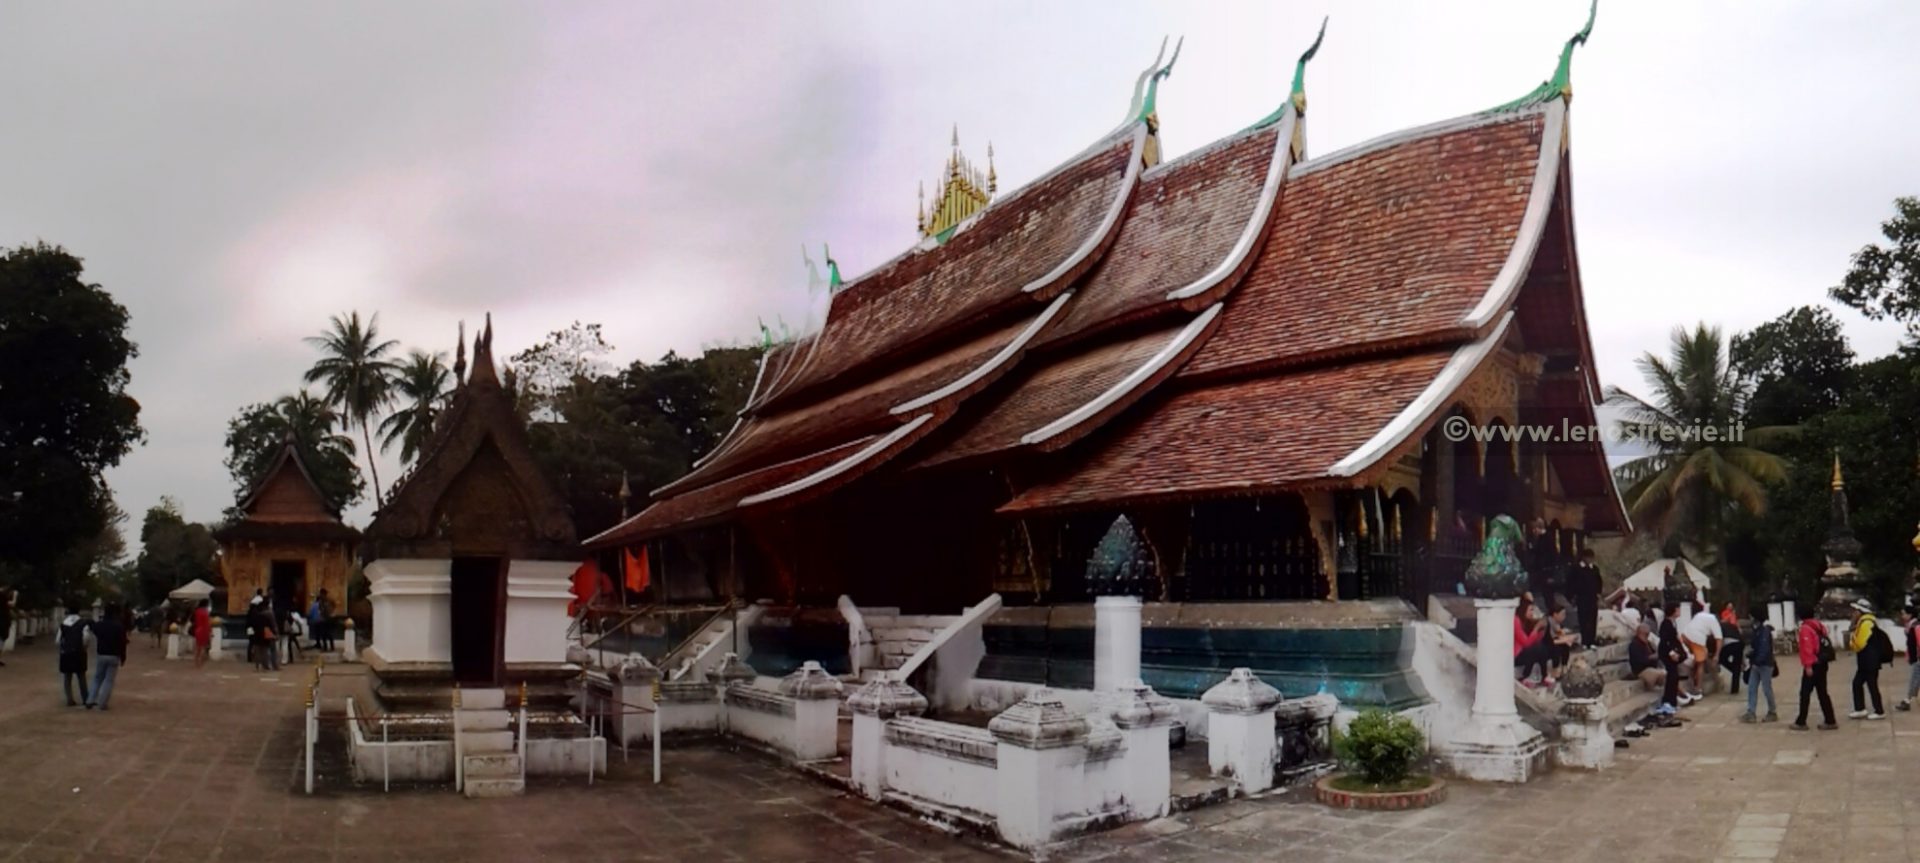 Luang Prabang Monasteri